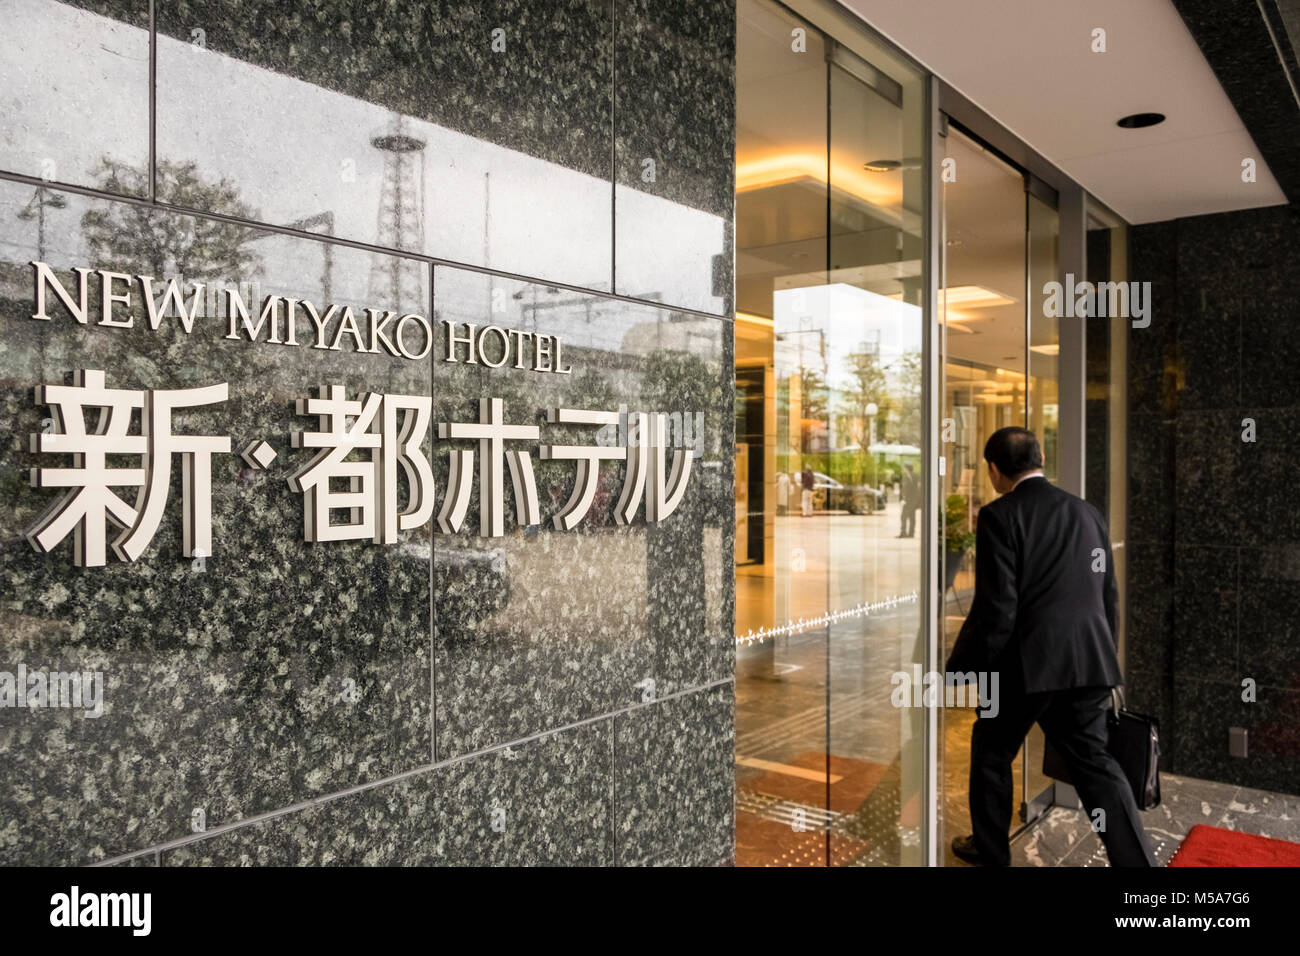 The New Miyako Hotel, Kyoto, Japan Stock Photo